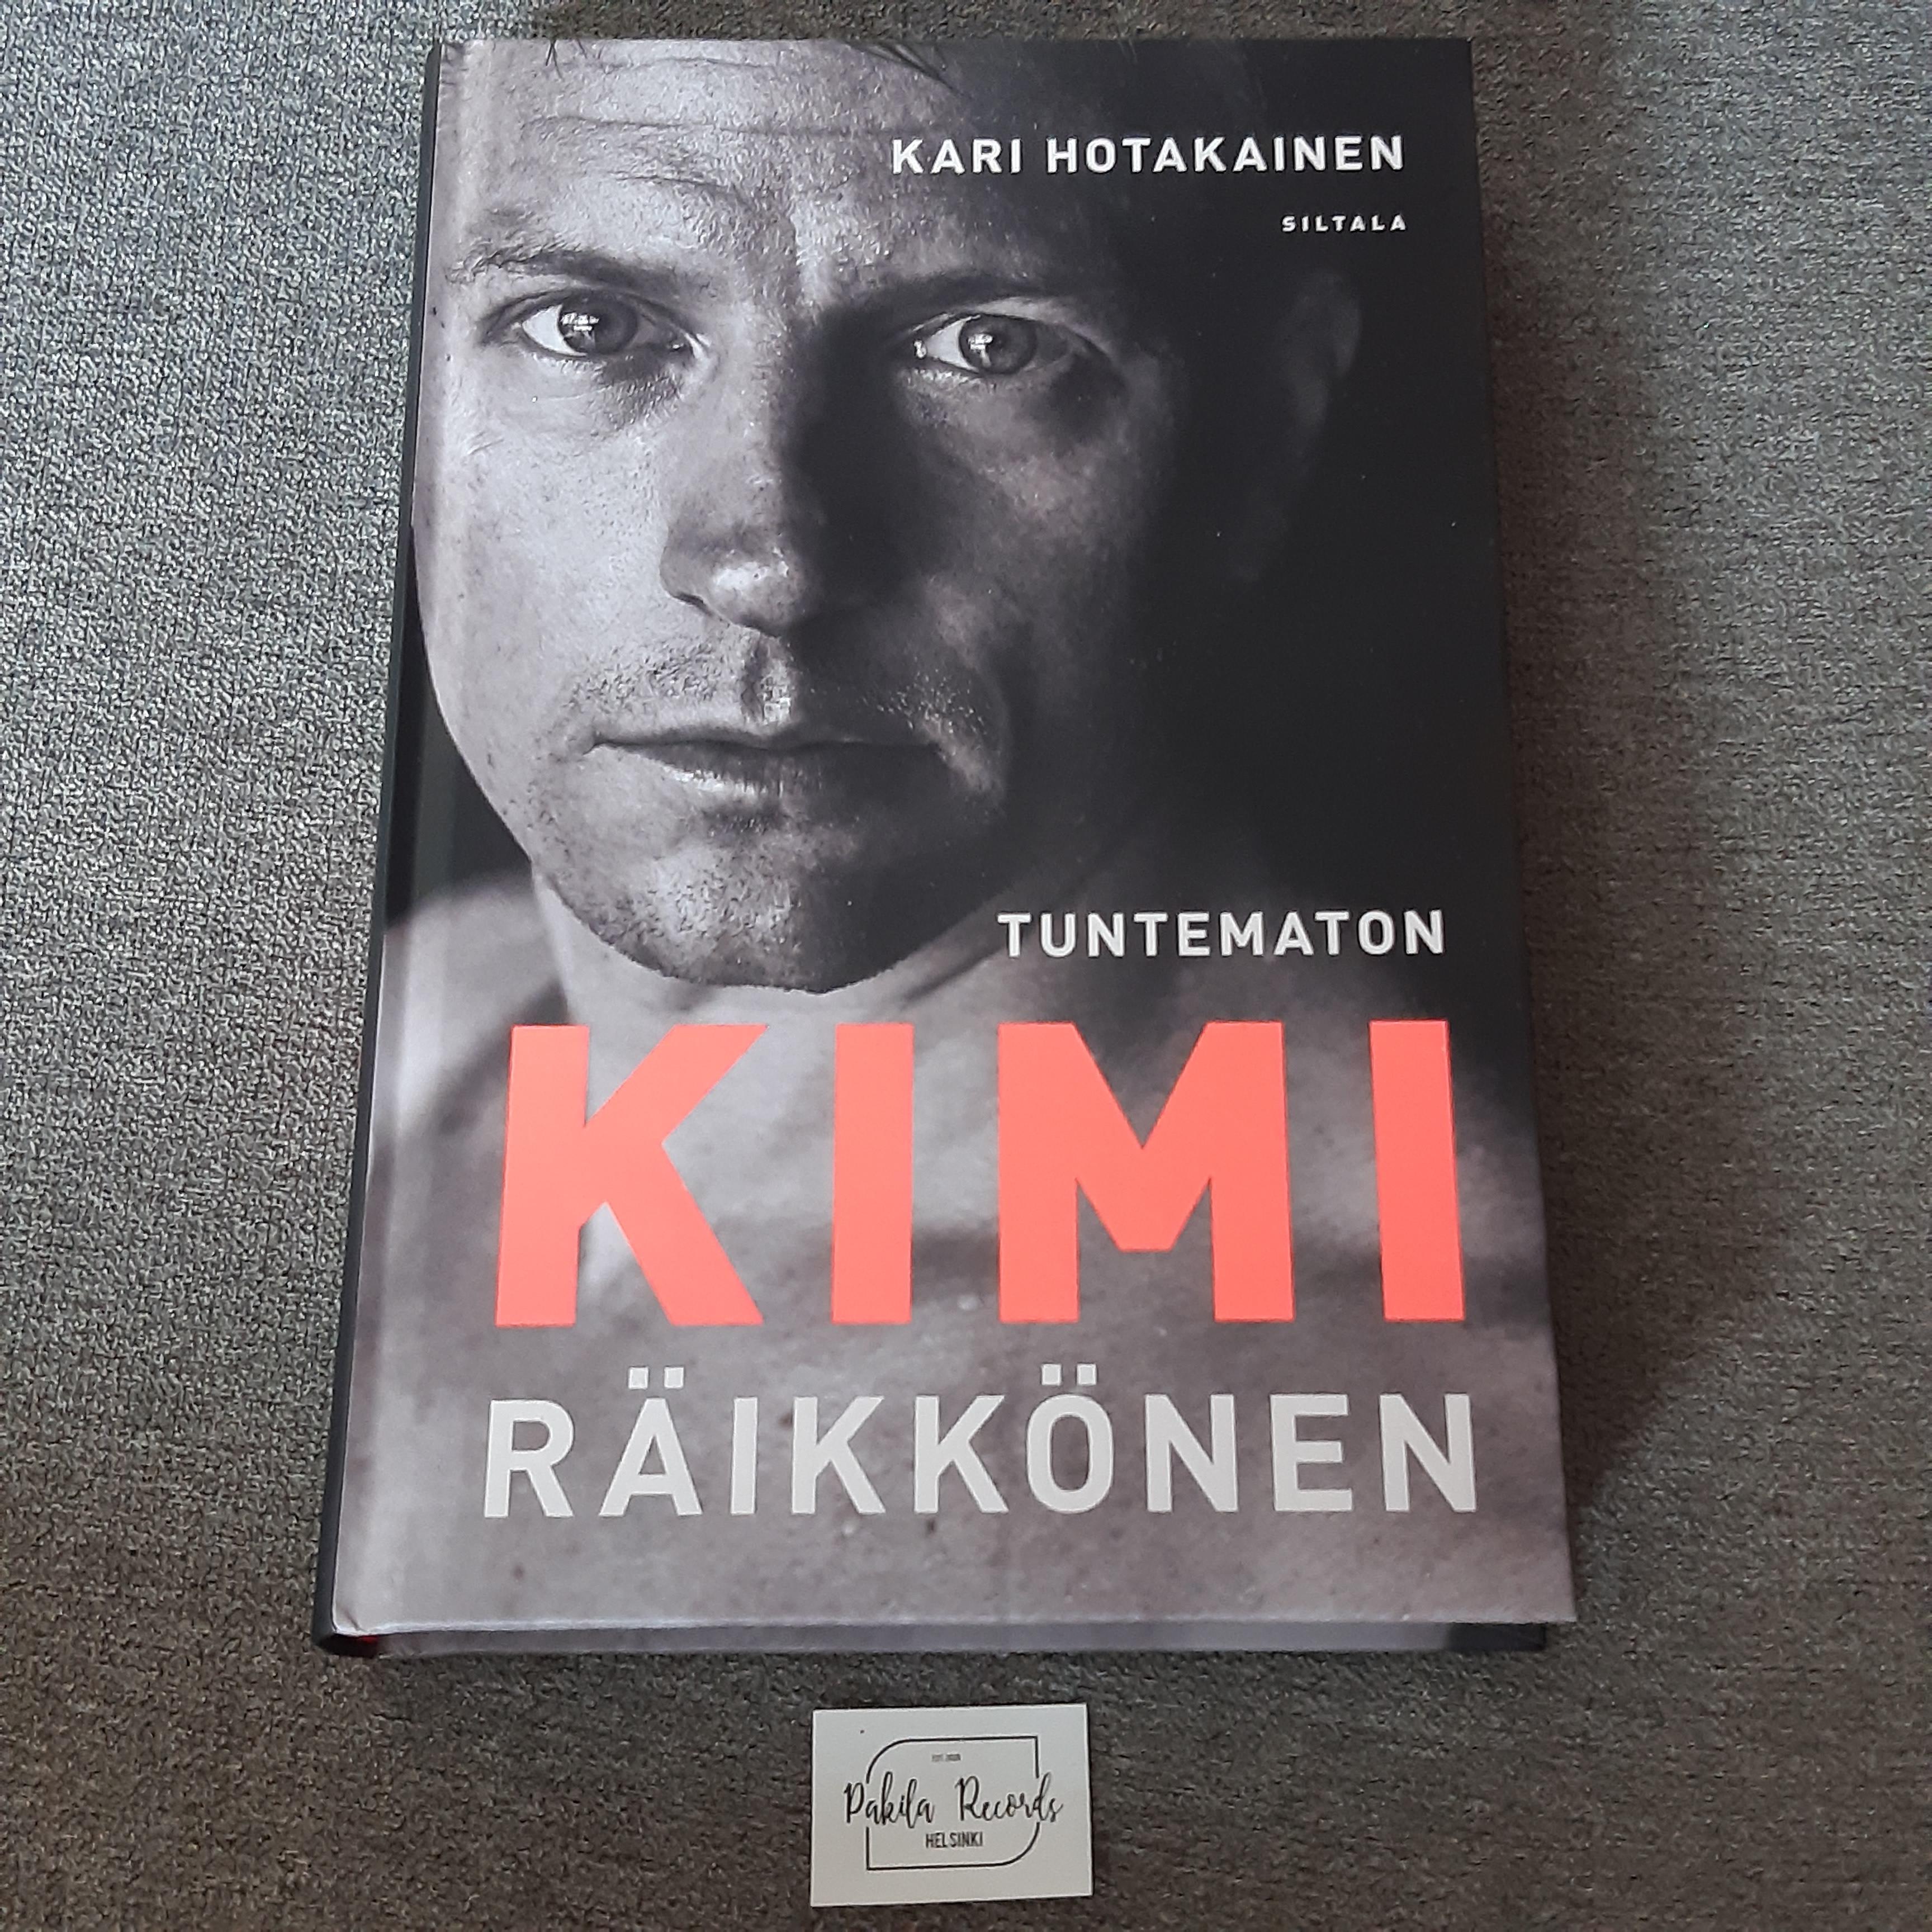 Tuntematon Kimi Räikkönen - Kari Hotakainen - Kirja (käytetty)